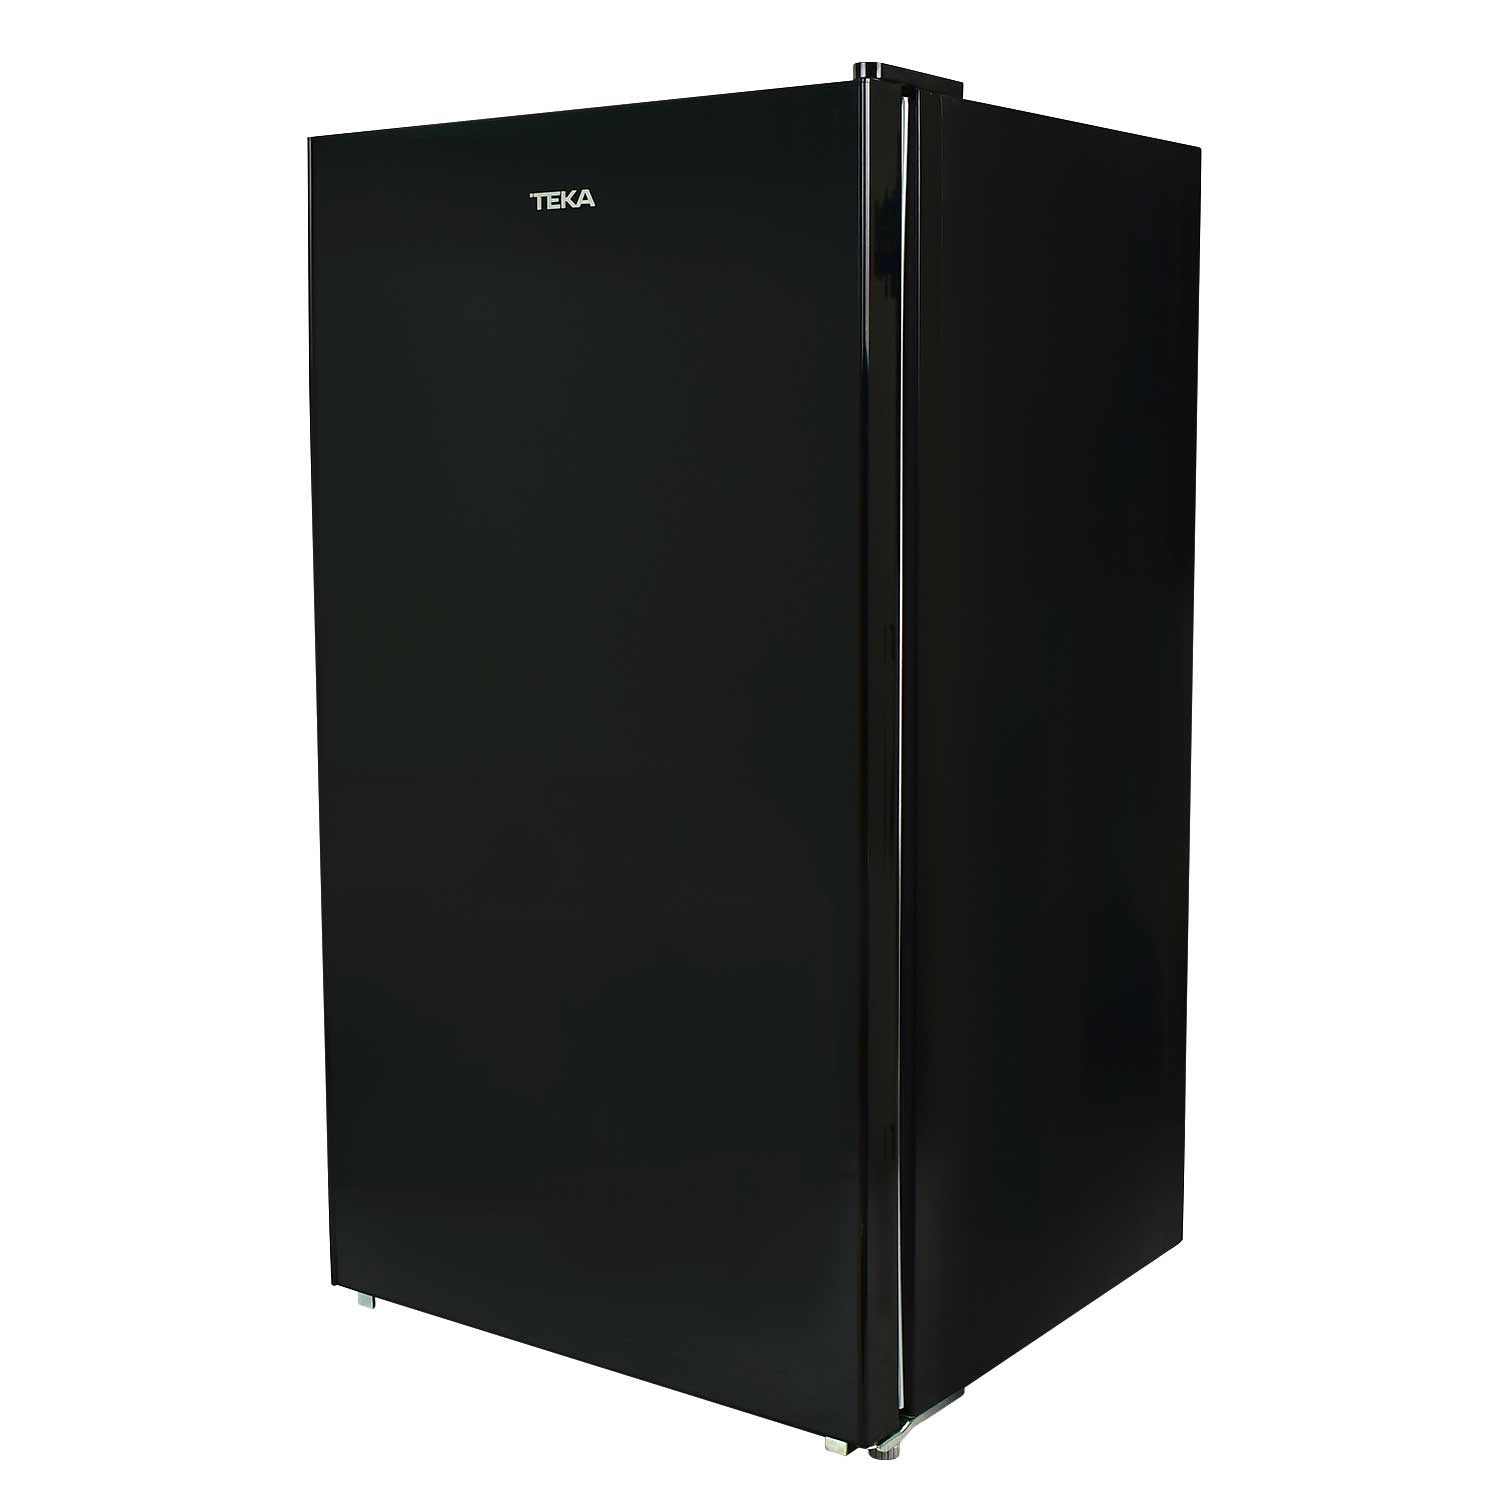 Refrigerador Frigobar Teka RSR 10520 GBK 72 W